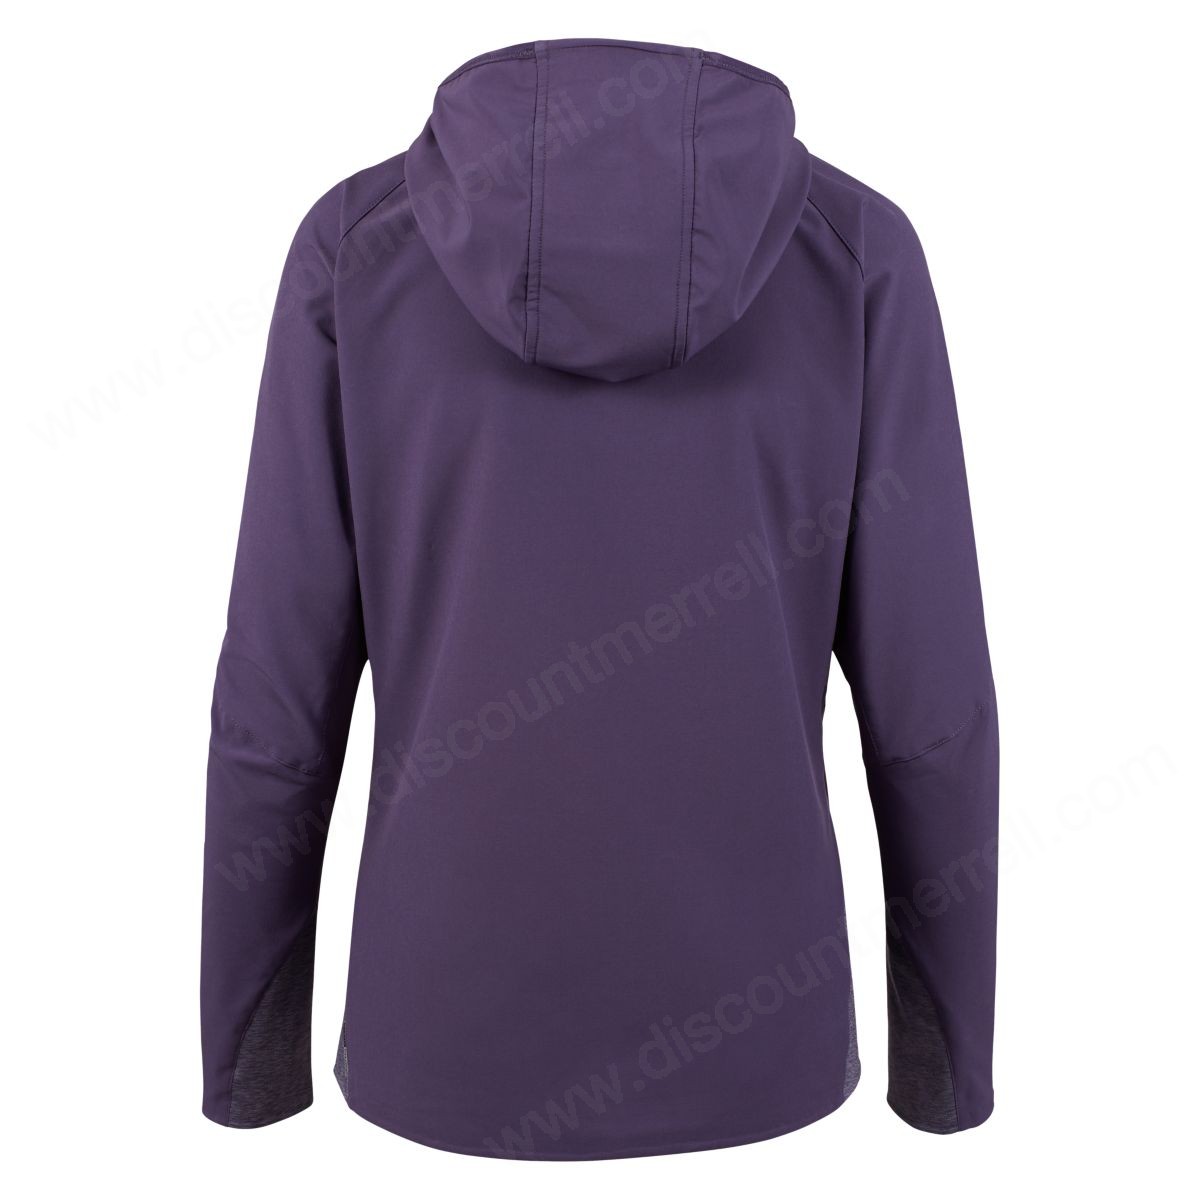 Merrell Woman's Stapleton Softshell Jacket Purple Velvet - -1